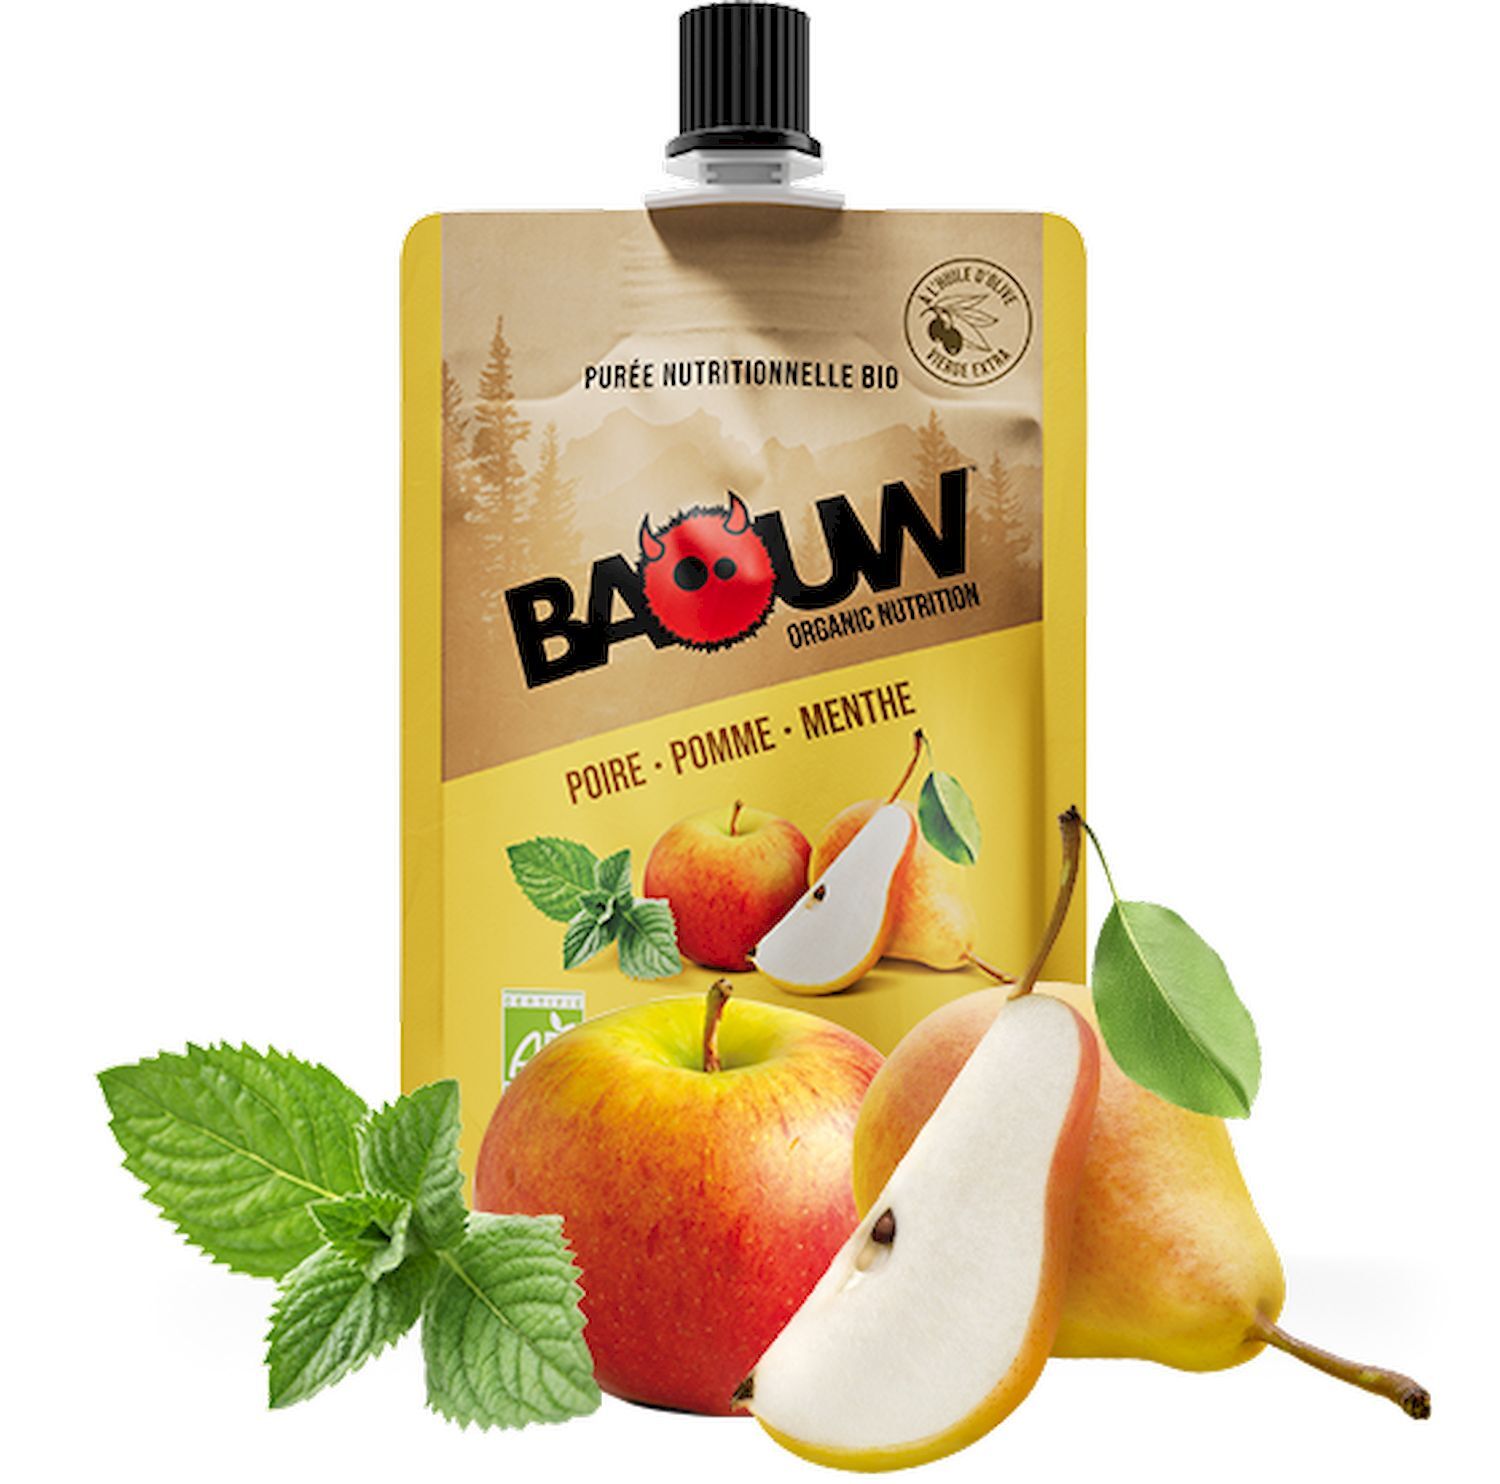 Baouw Poire-Pomme-Menthe - Composte e puree energetiche | Hardloop